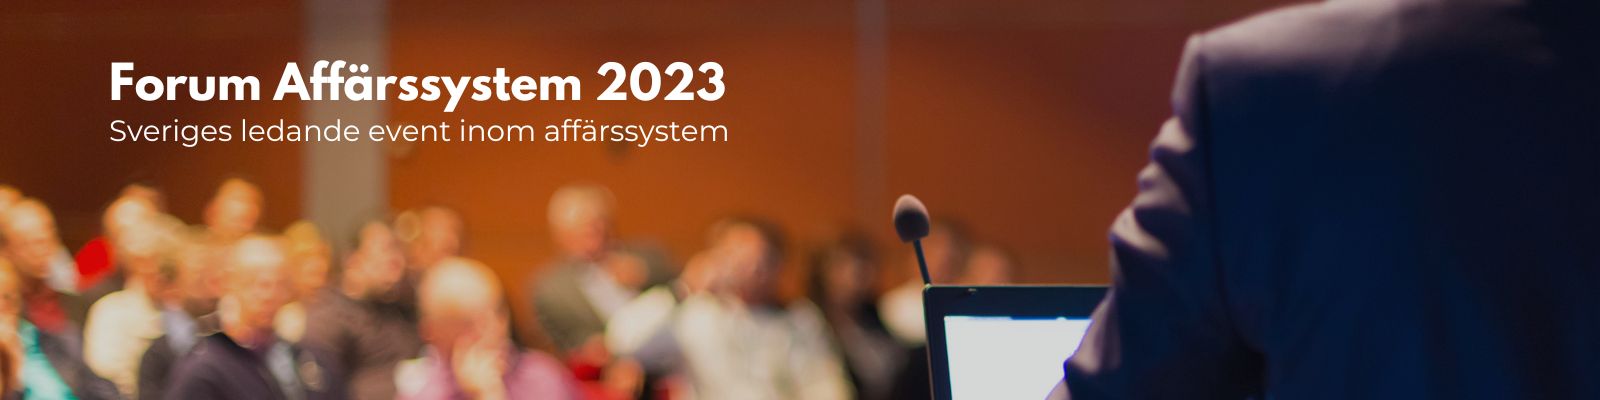 Forum Affärssystem 2023 Stockholm Sveriges ledande event kring affärssystem